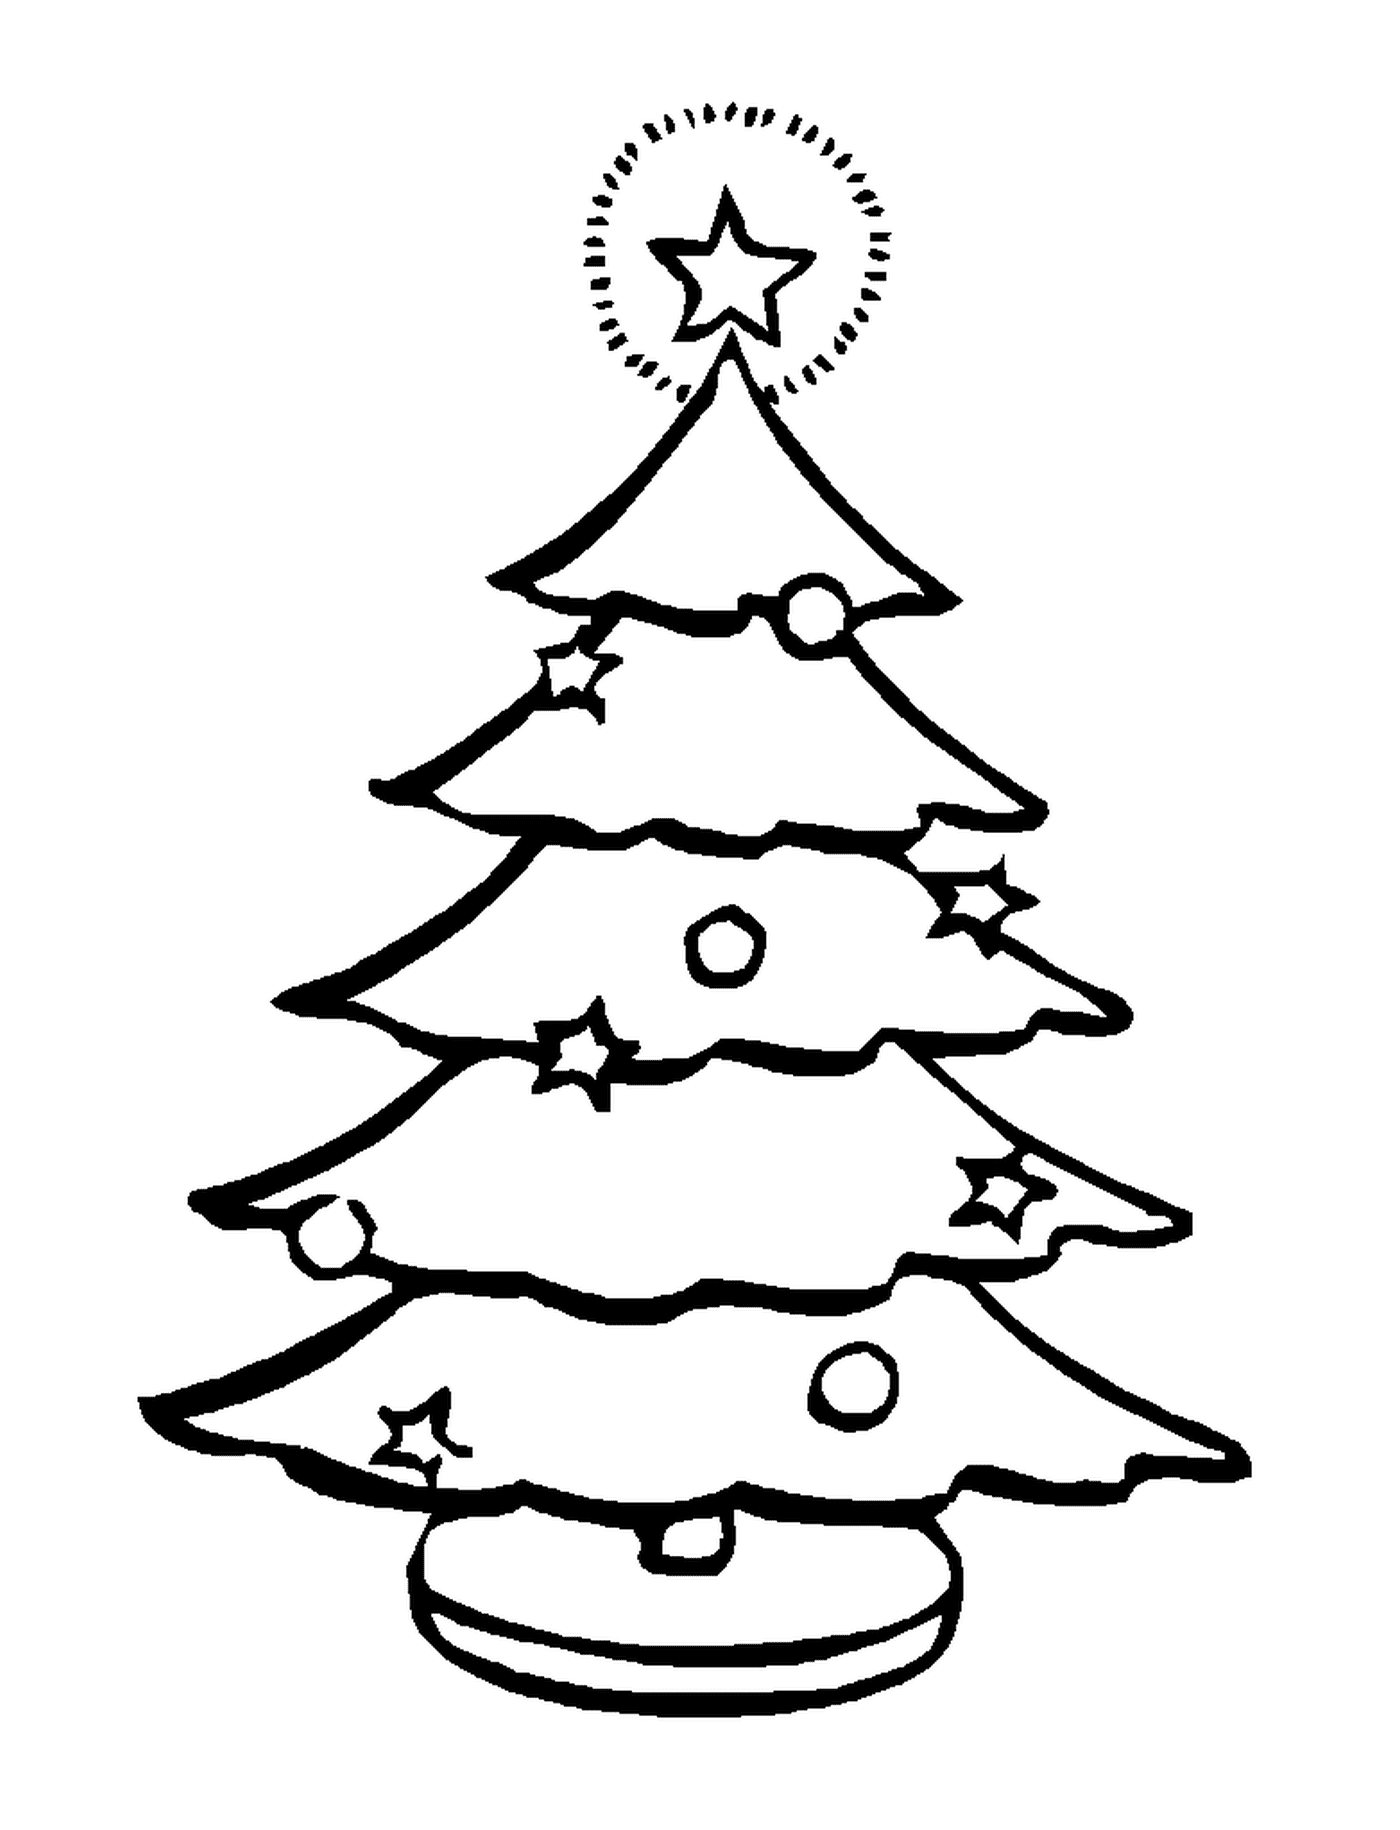  Un simple árbol de Navidad 